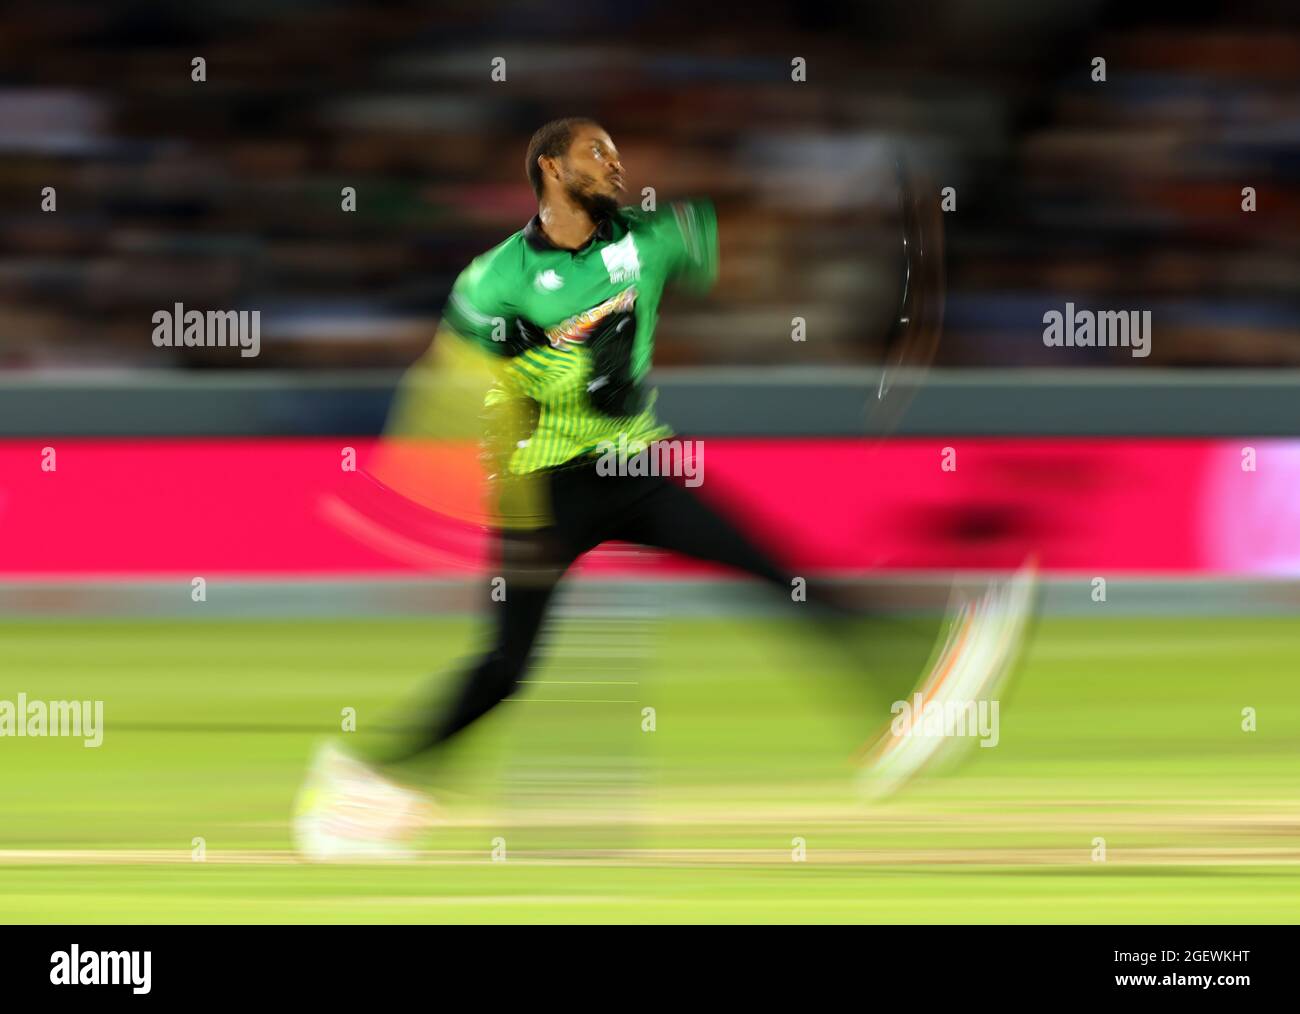 Cricket chris jordan hi-res stock photography and images - Alamy